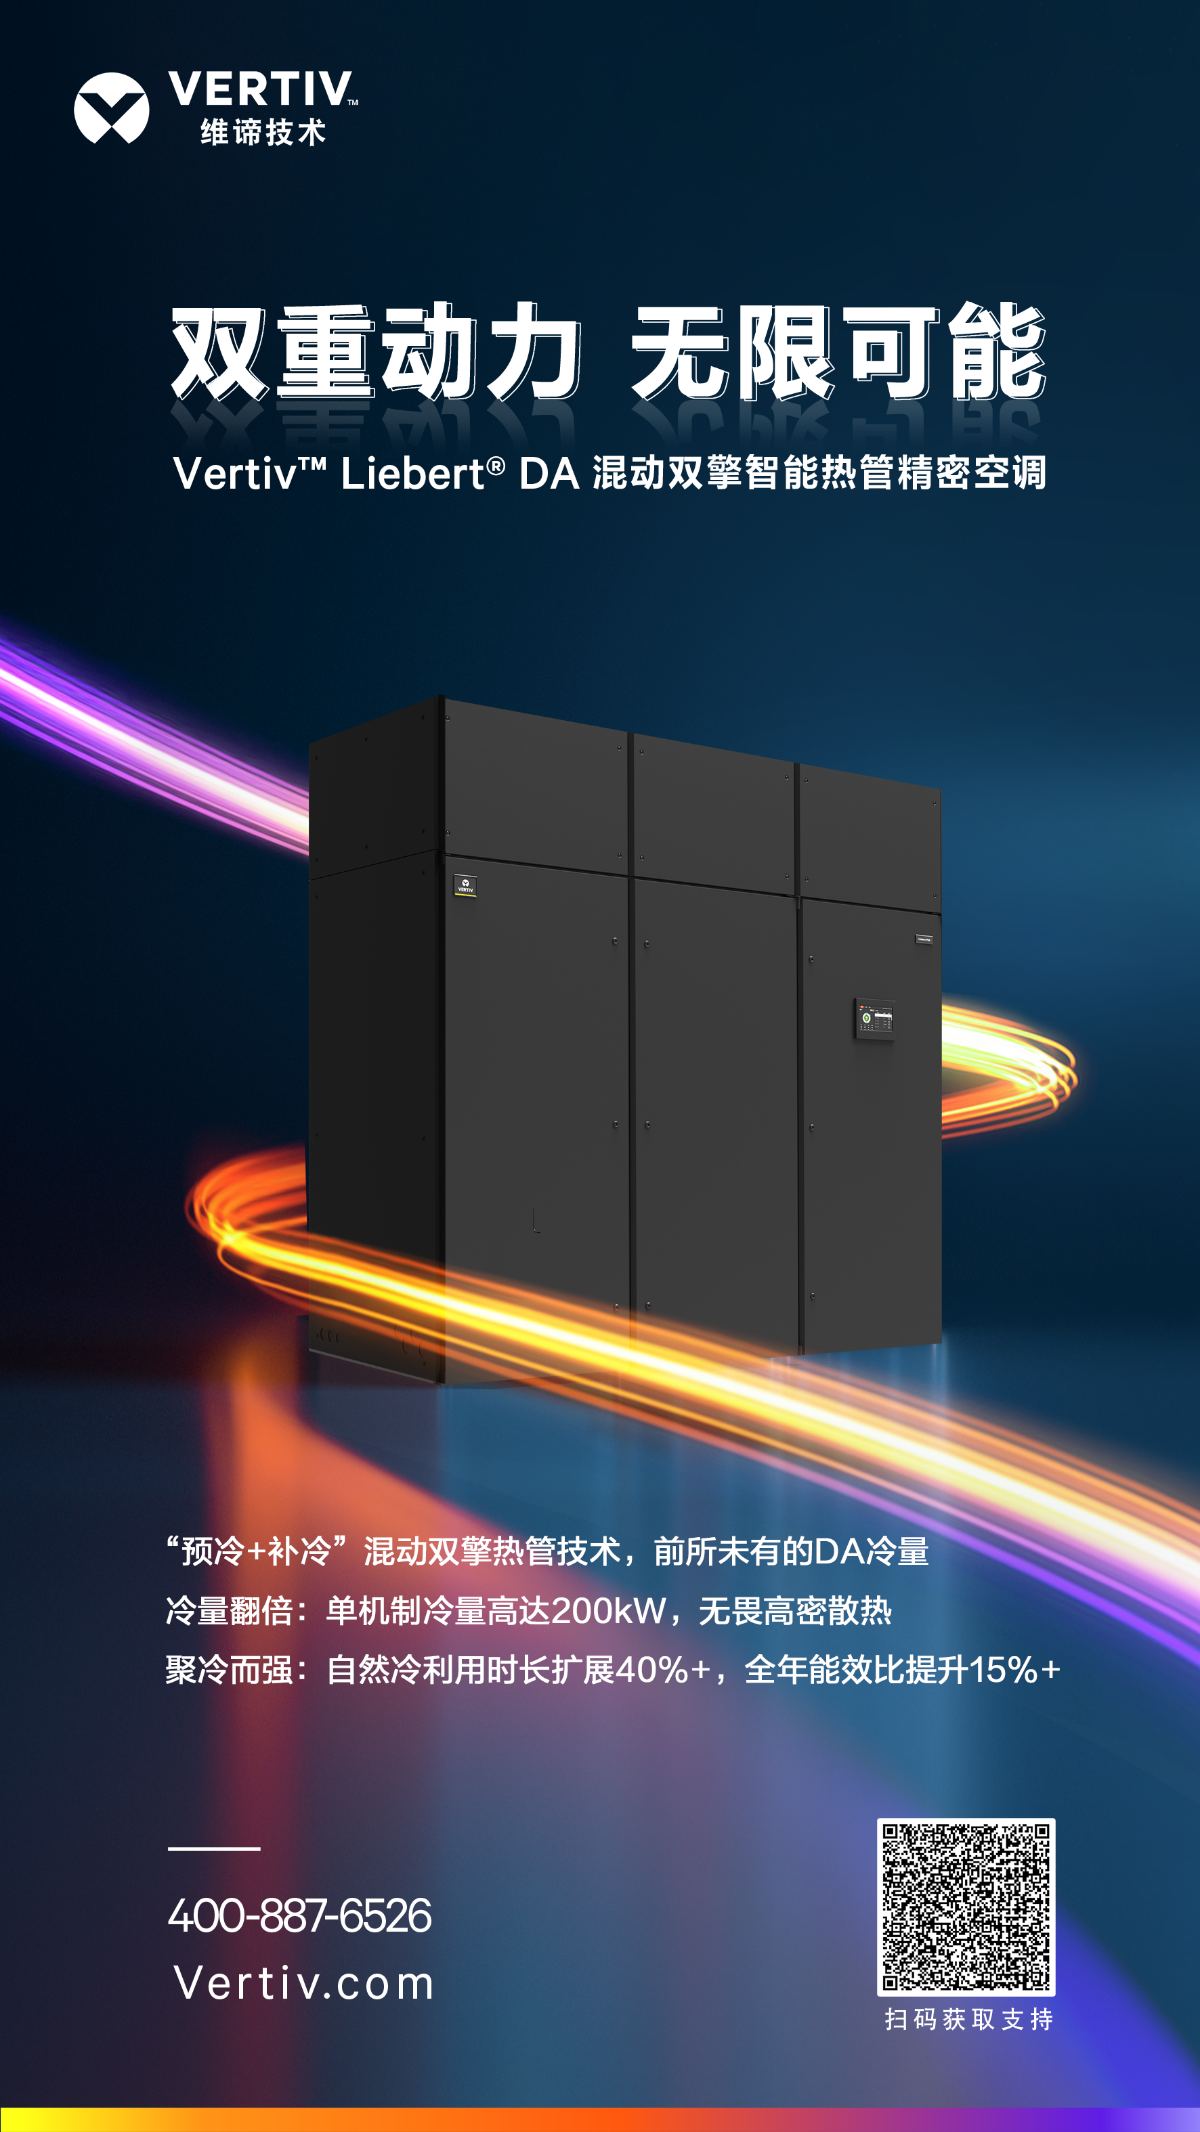 <b>新品发布 | Vertiv™ Liebert® DA，双重动力，无限可能</b>